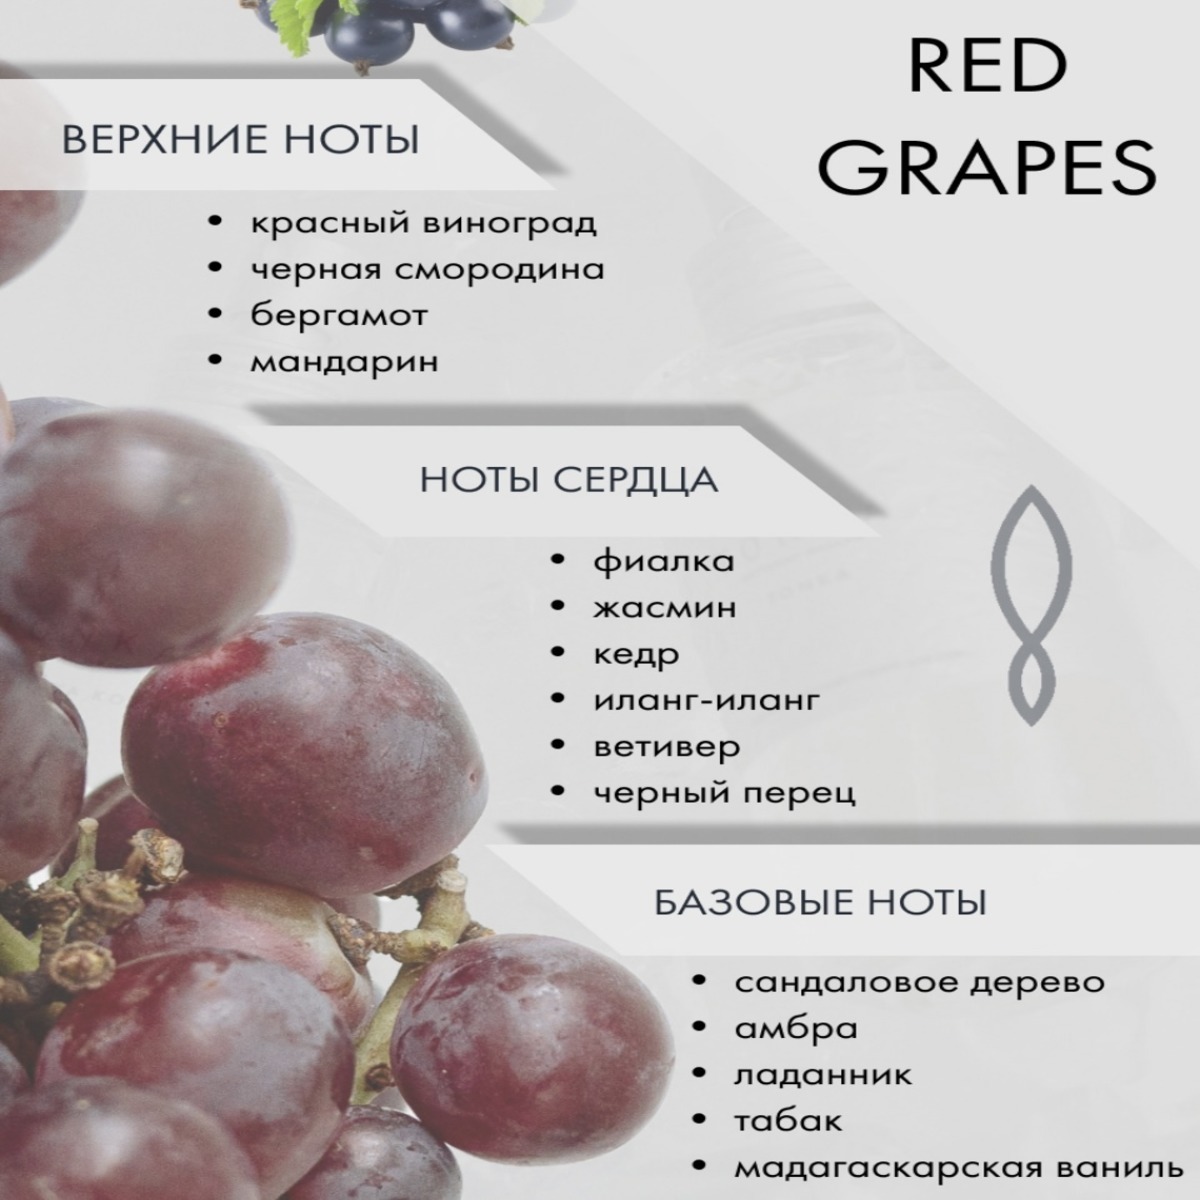 Сорт винограда парфюм фото и описание